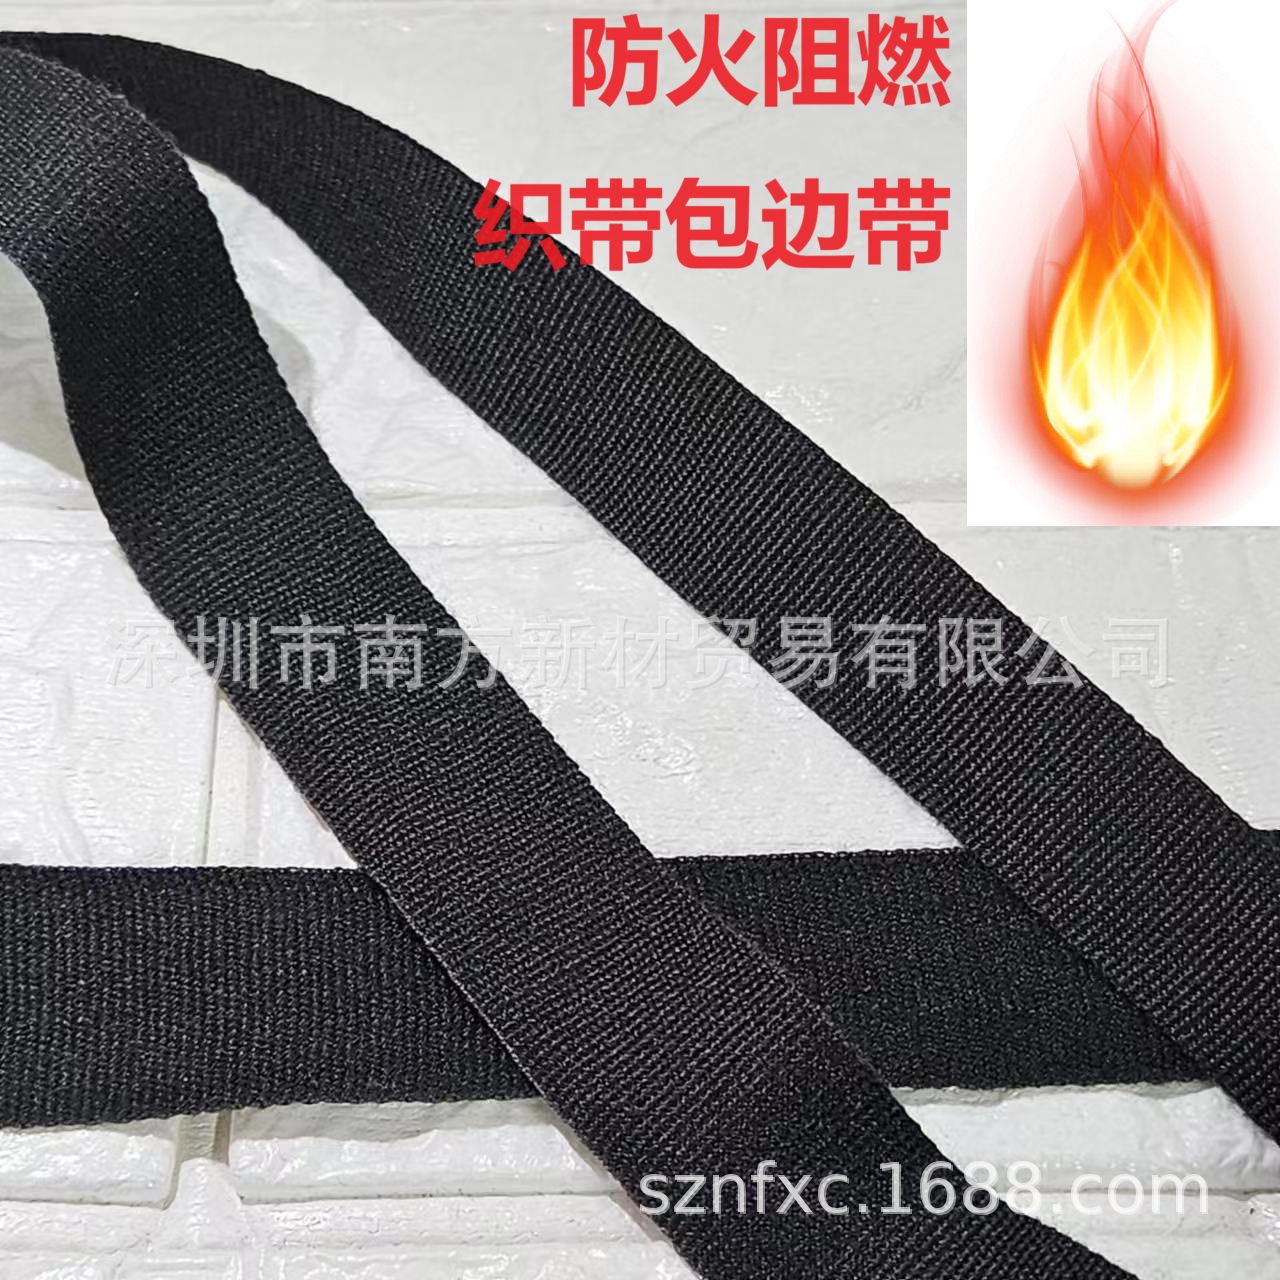 现货 防火阻燃包边织带  20-25mm阻燃织带 芳纶织带 灭火毯用织带